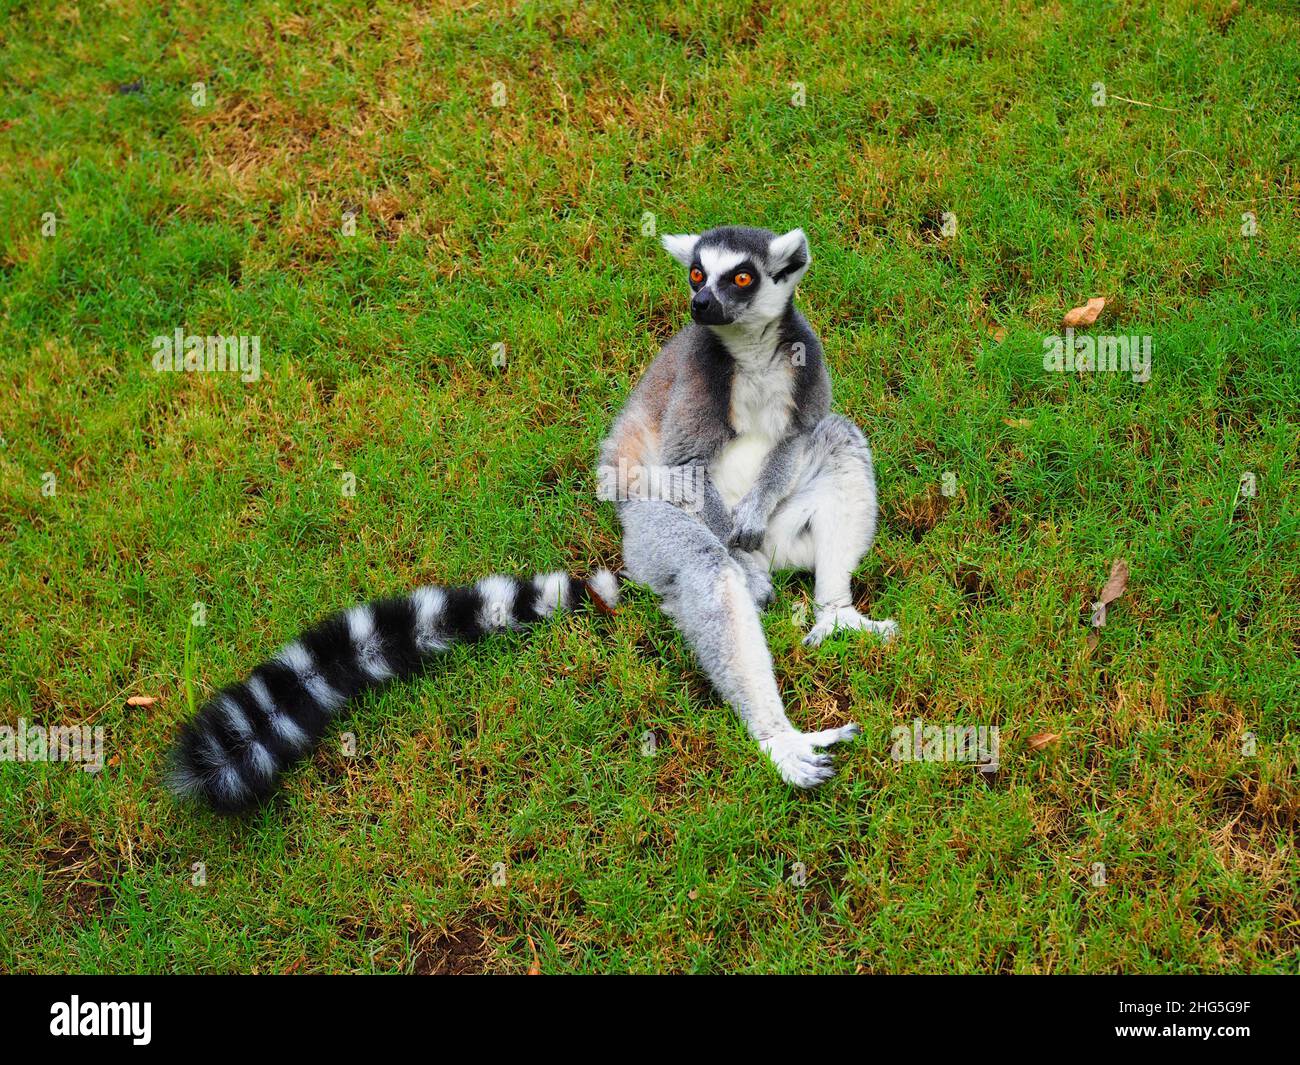 Carino Lemur dal Madagascar, Africa #Wildlife #Meme #Authentic #fernweh #slowtravel #stayinspired #TravelAgain Foto Stock